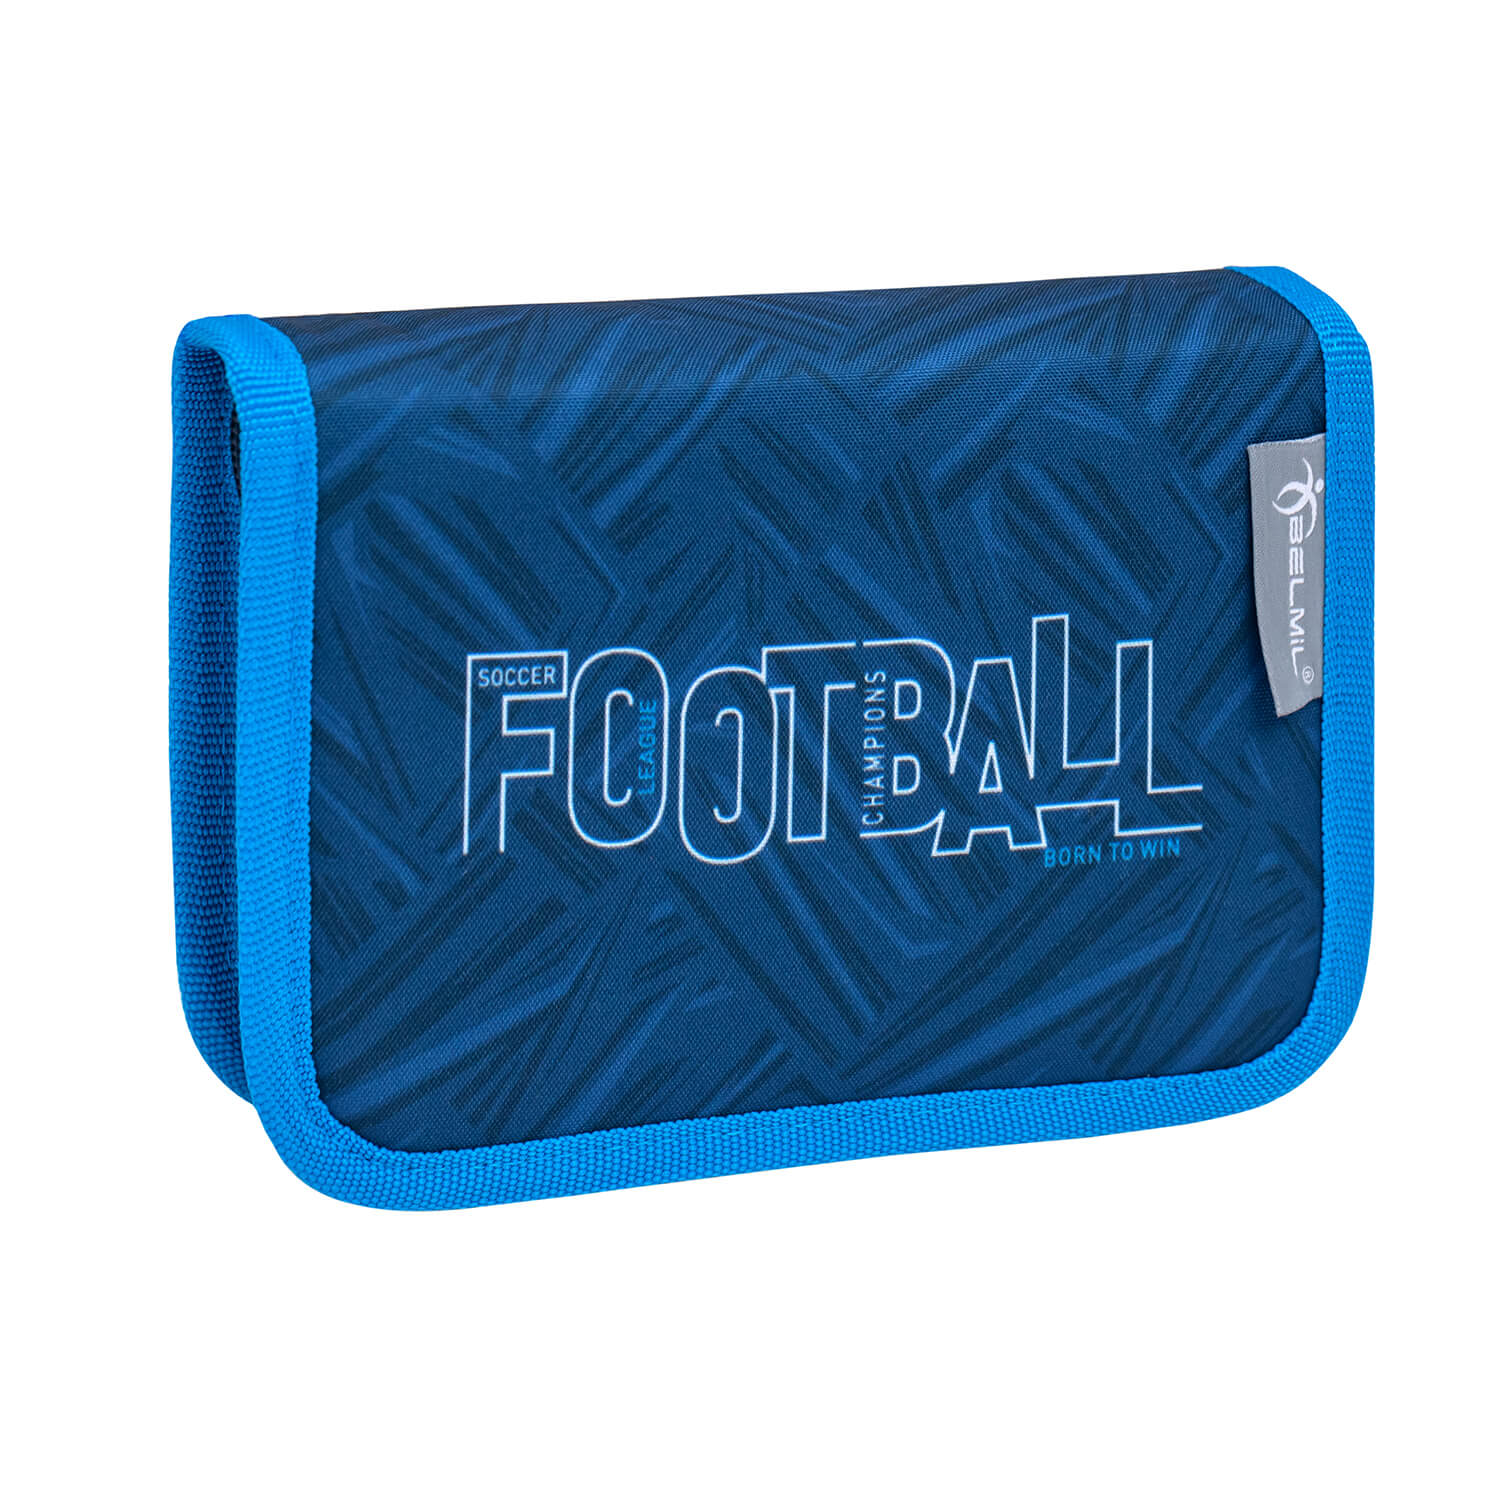 Compact Football Champions schoolbag set 4 pcs